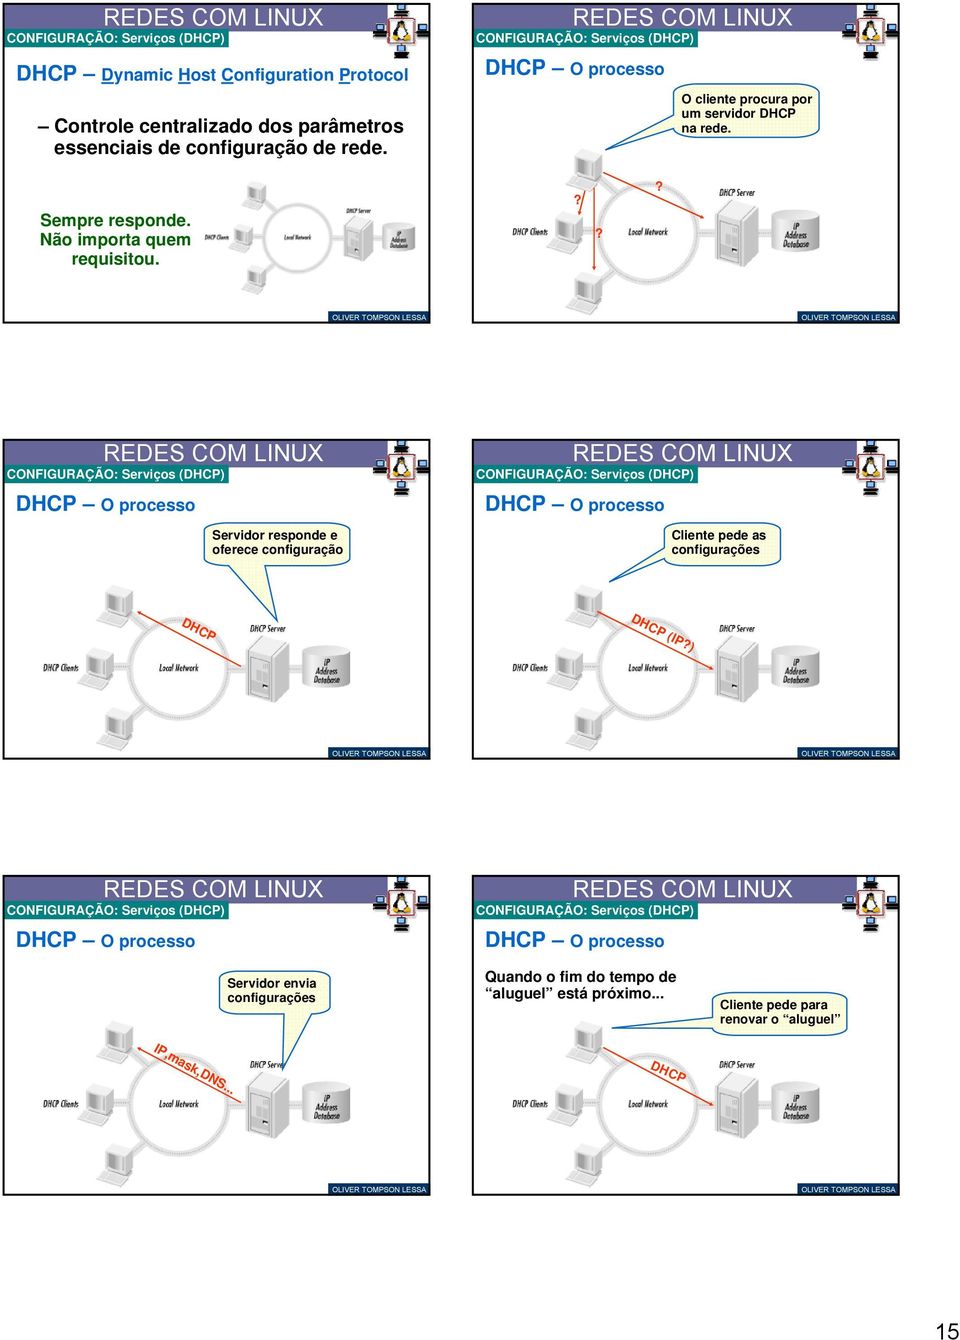 ?? CONFIGURAÇÃO: Serviços (DHCP) DHCP O processo Servidor responde e oferece configuração CONFIGURAÇÃO: Serviços (DHCP) DHCP O processo Cliente pede as configurações DHCP